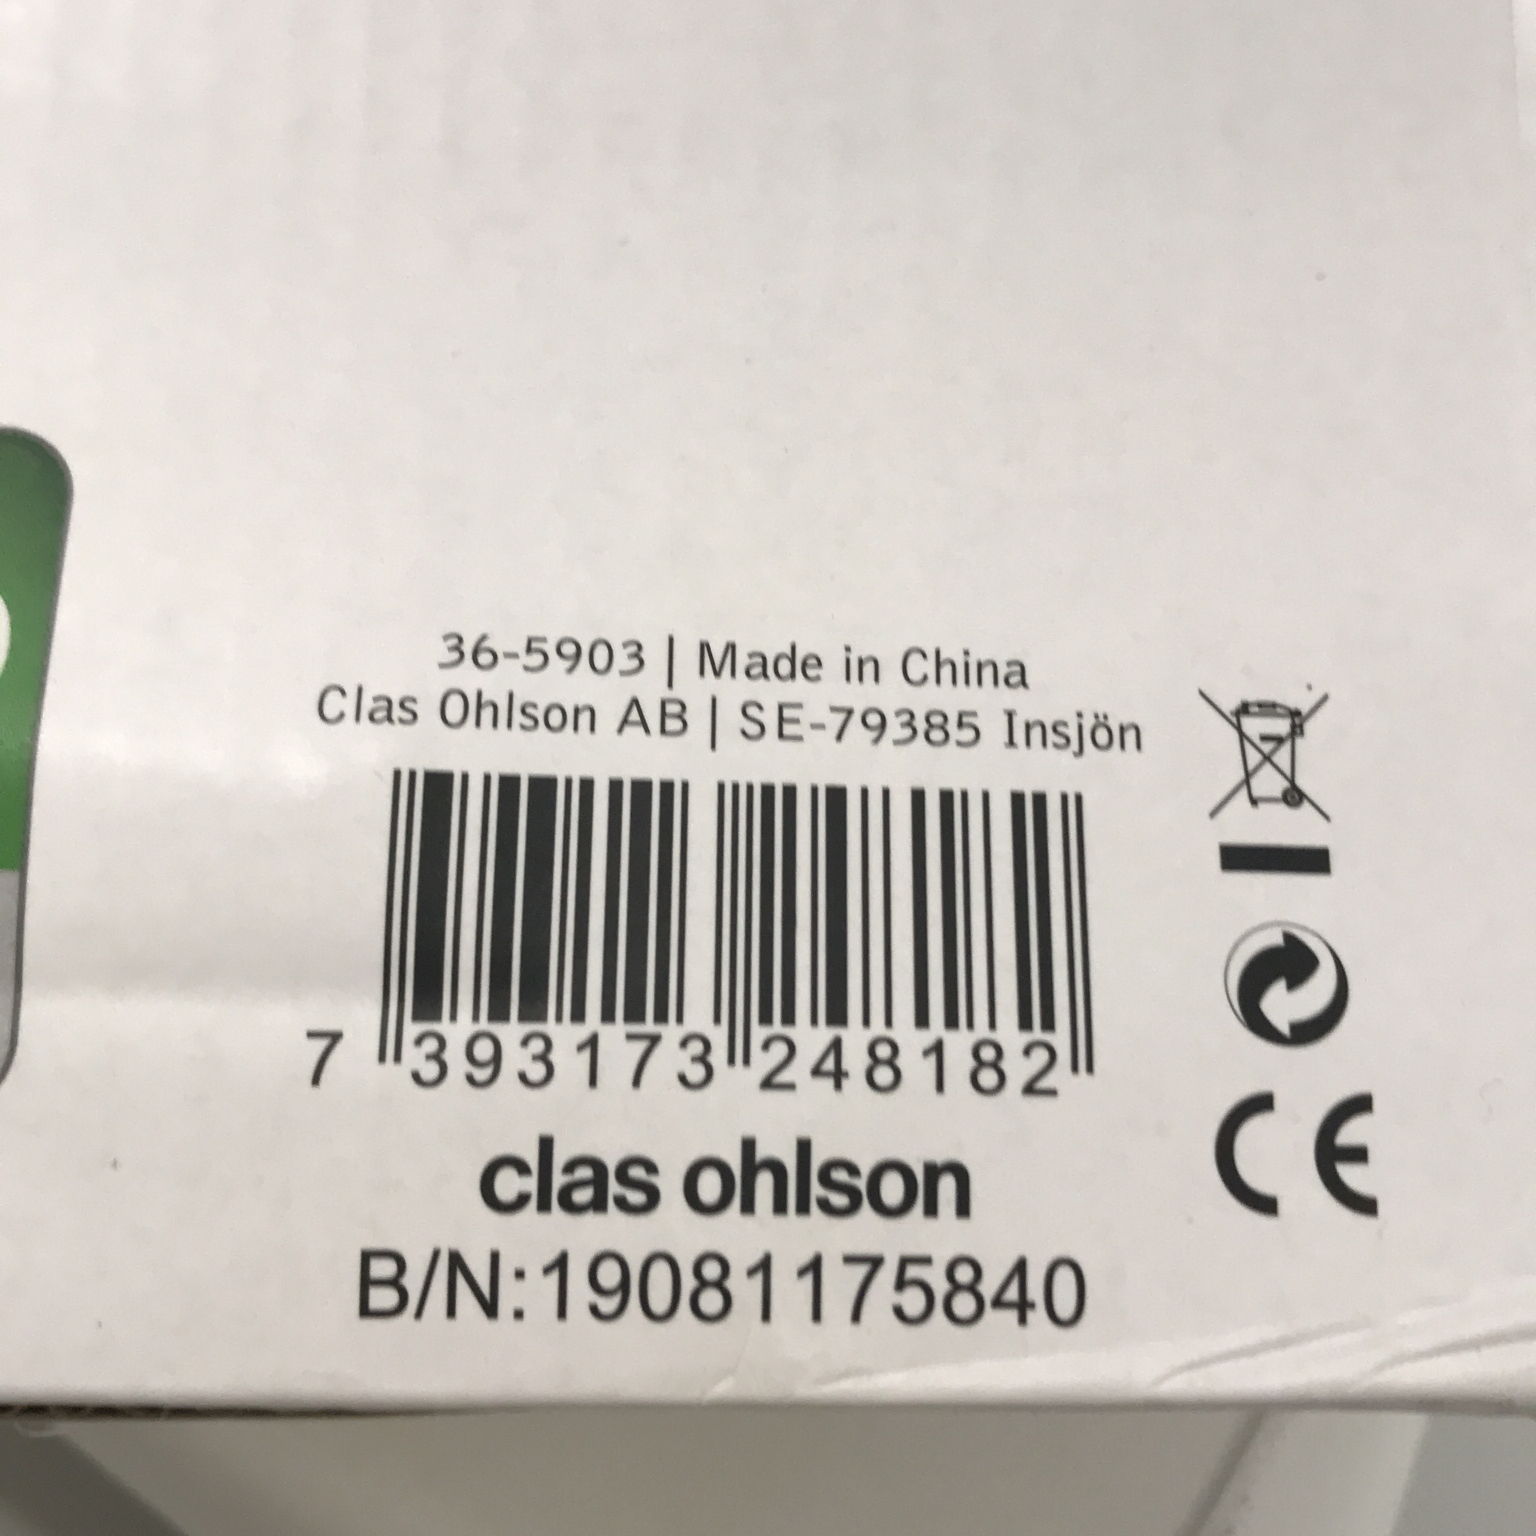 Clas Ohlson